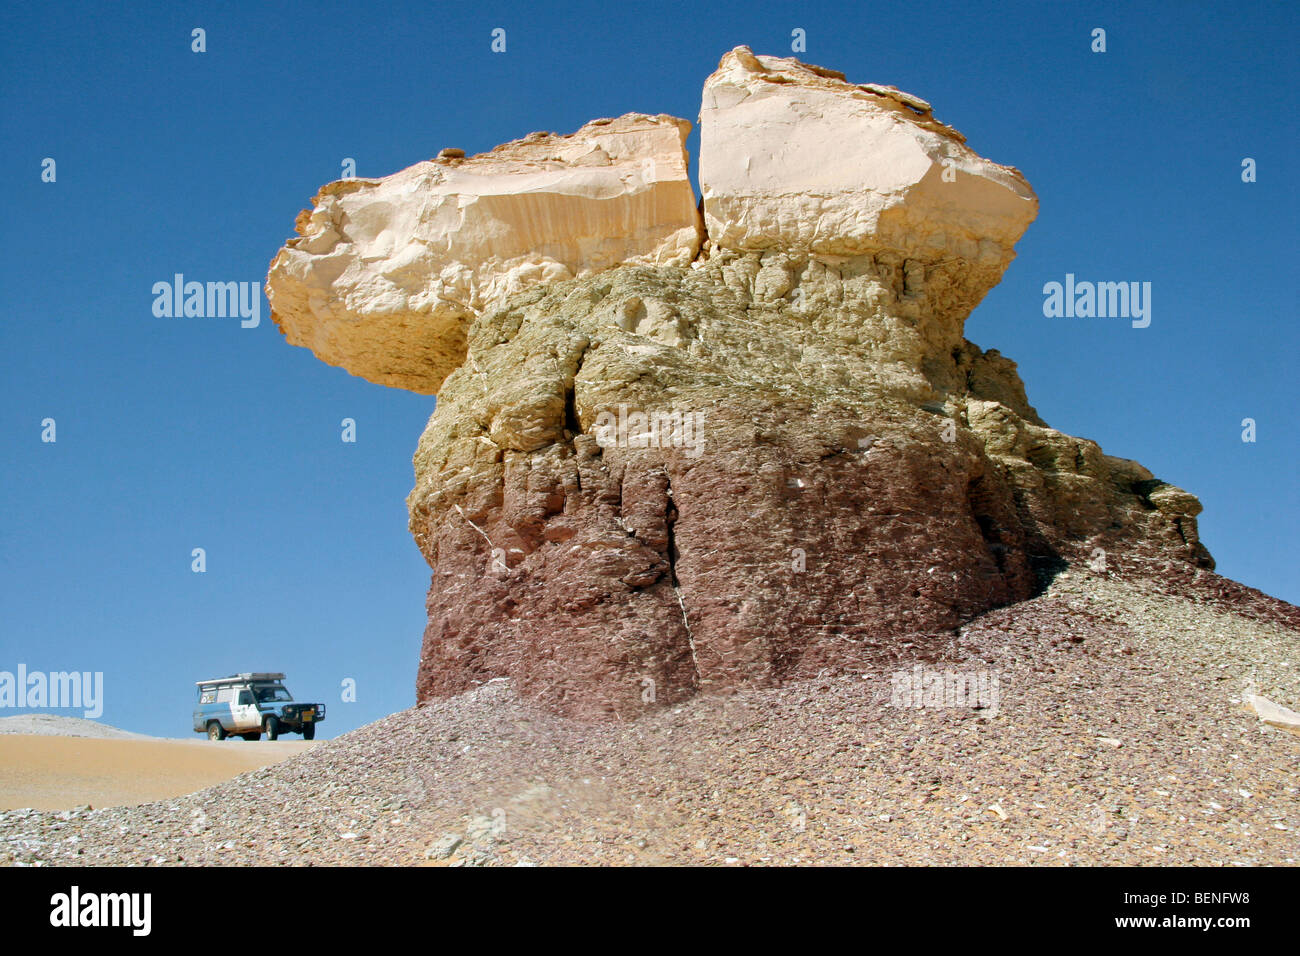 Veicolo a quattro ruote motrici e chalk rock in Bianco Deserto d'Egitto / Sahara el Beyda vicino a Farafra, deserto occidentale, Nord Africa Foto Stock